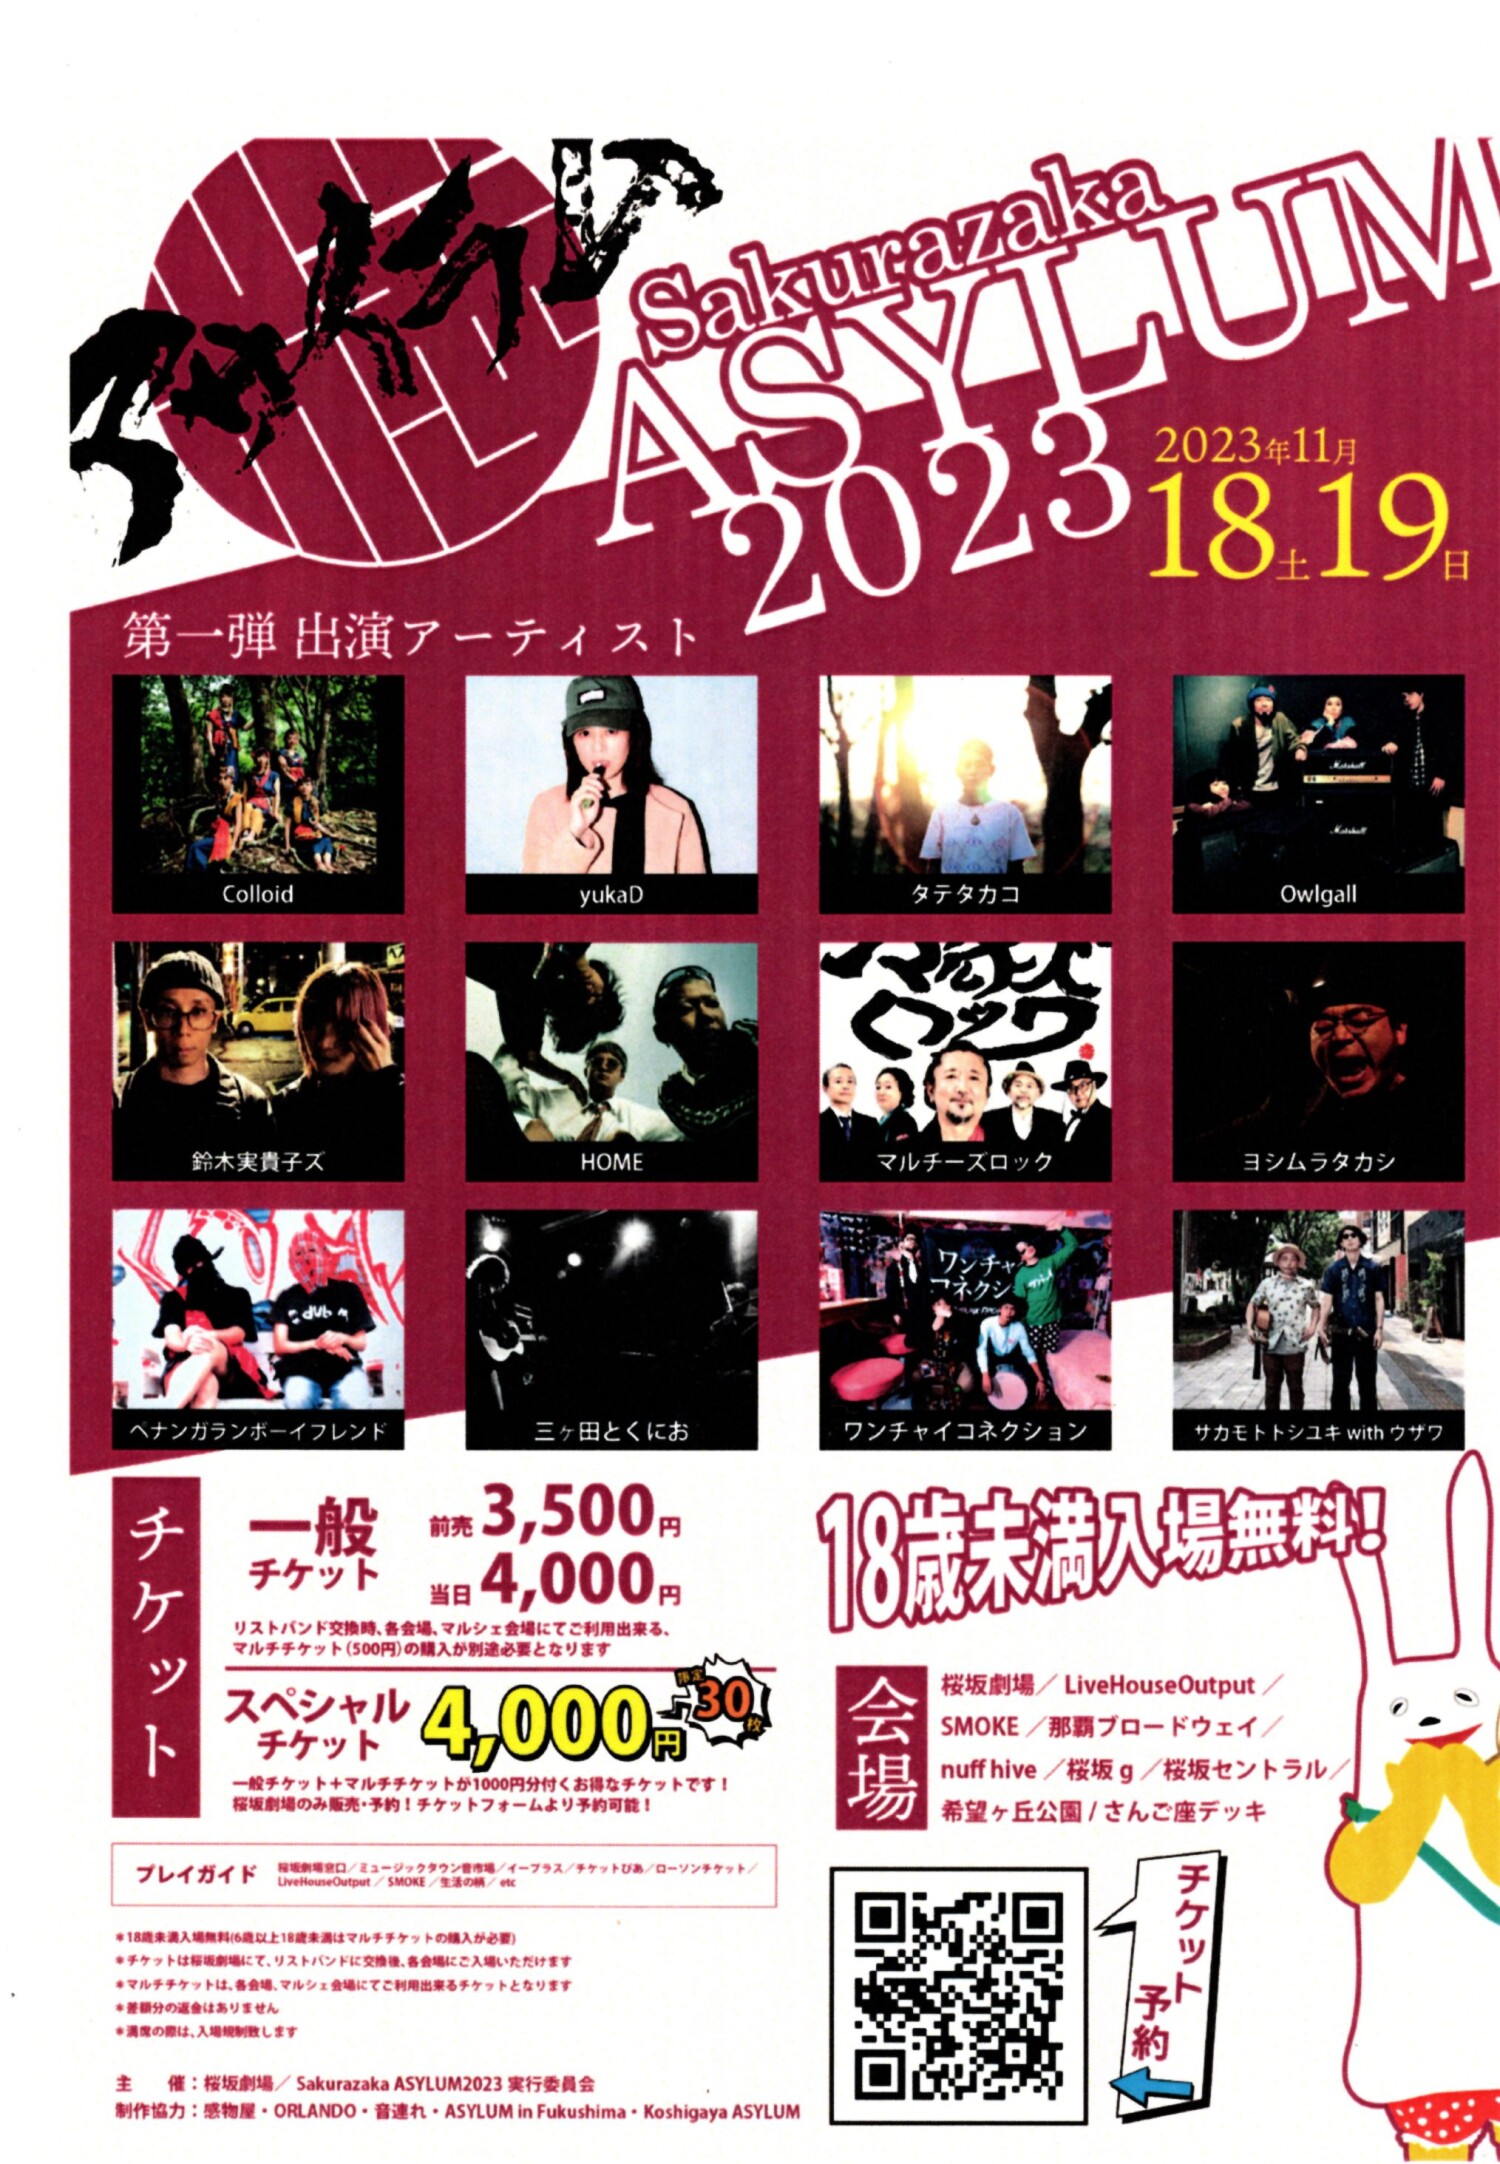 那覇の桜坂で音楽とアートに出合う「Sakurazaka ASYLUM 2023」